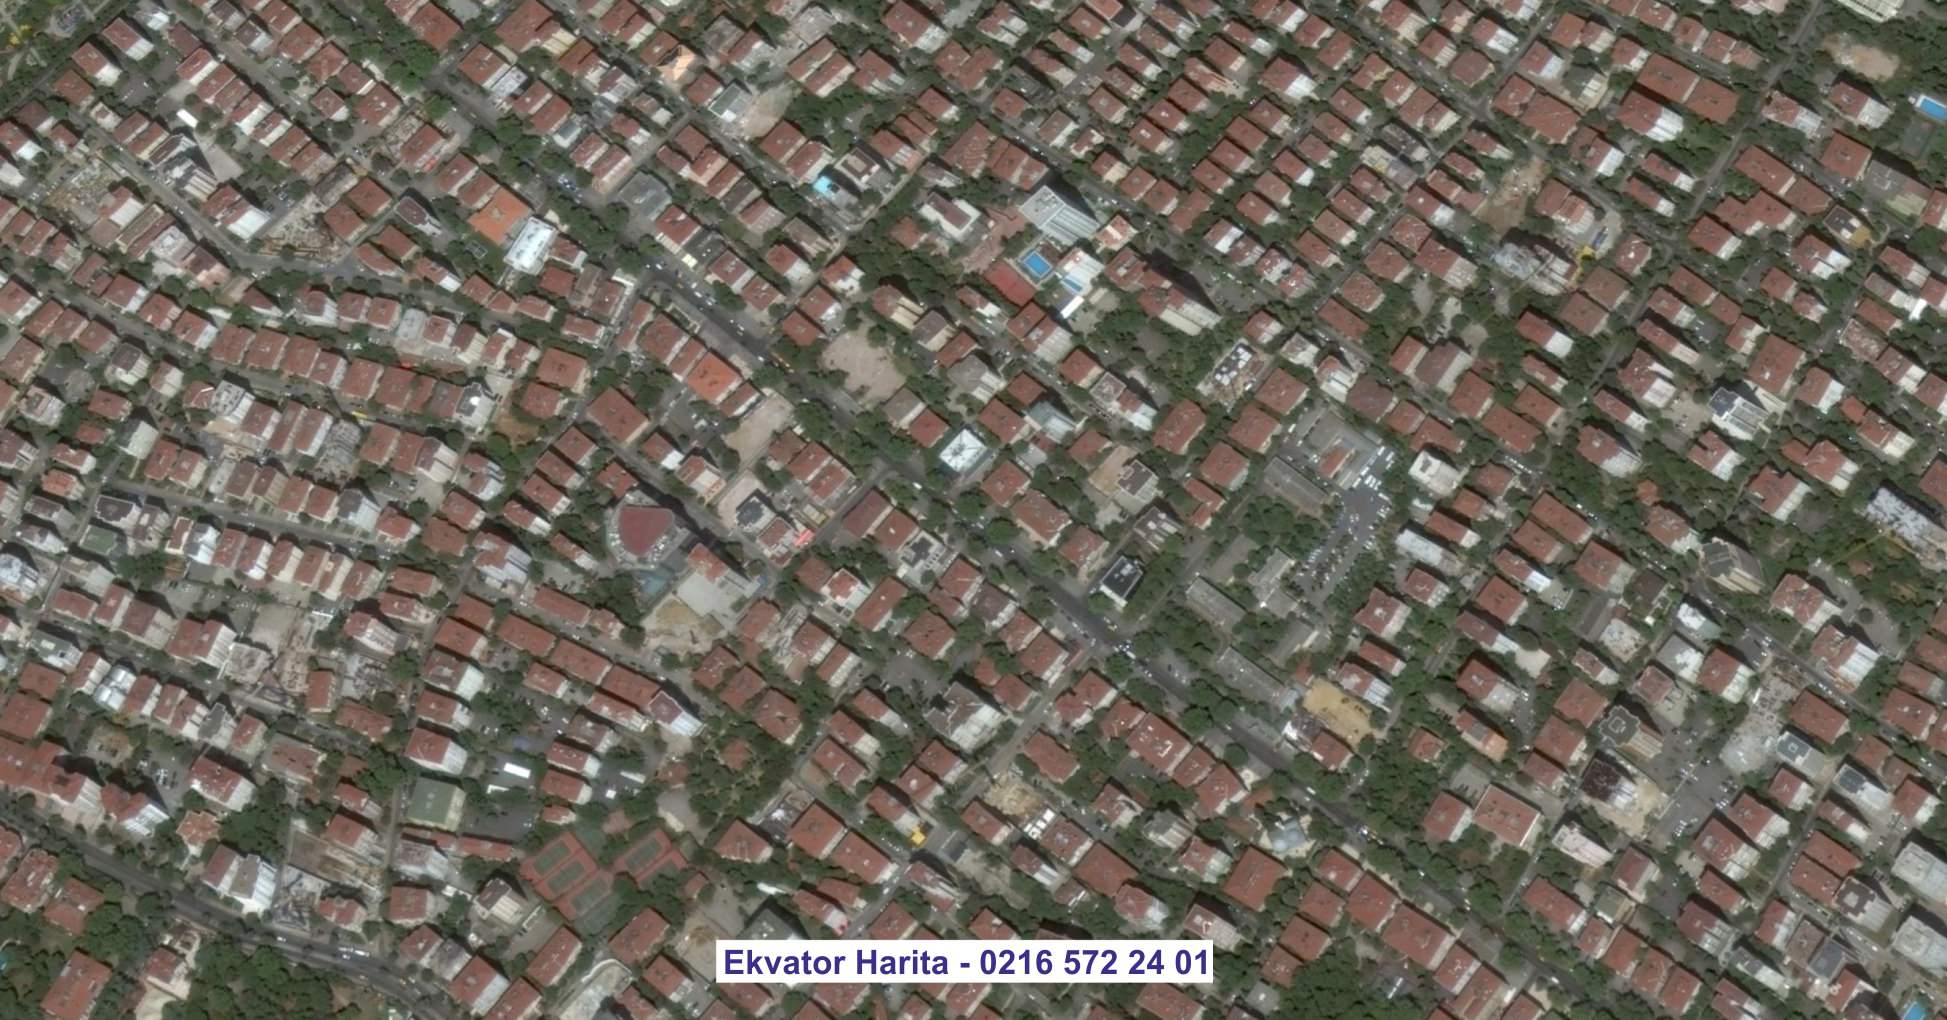 Güngören Uydu Görüntüsü Örnek Fotoğrafı